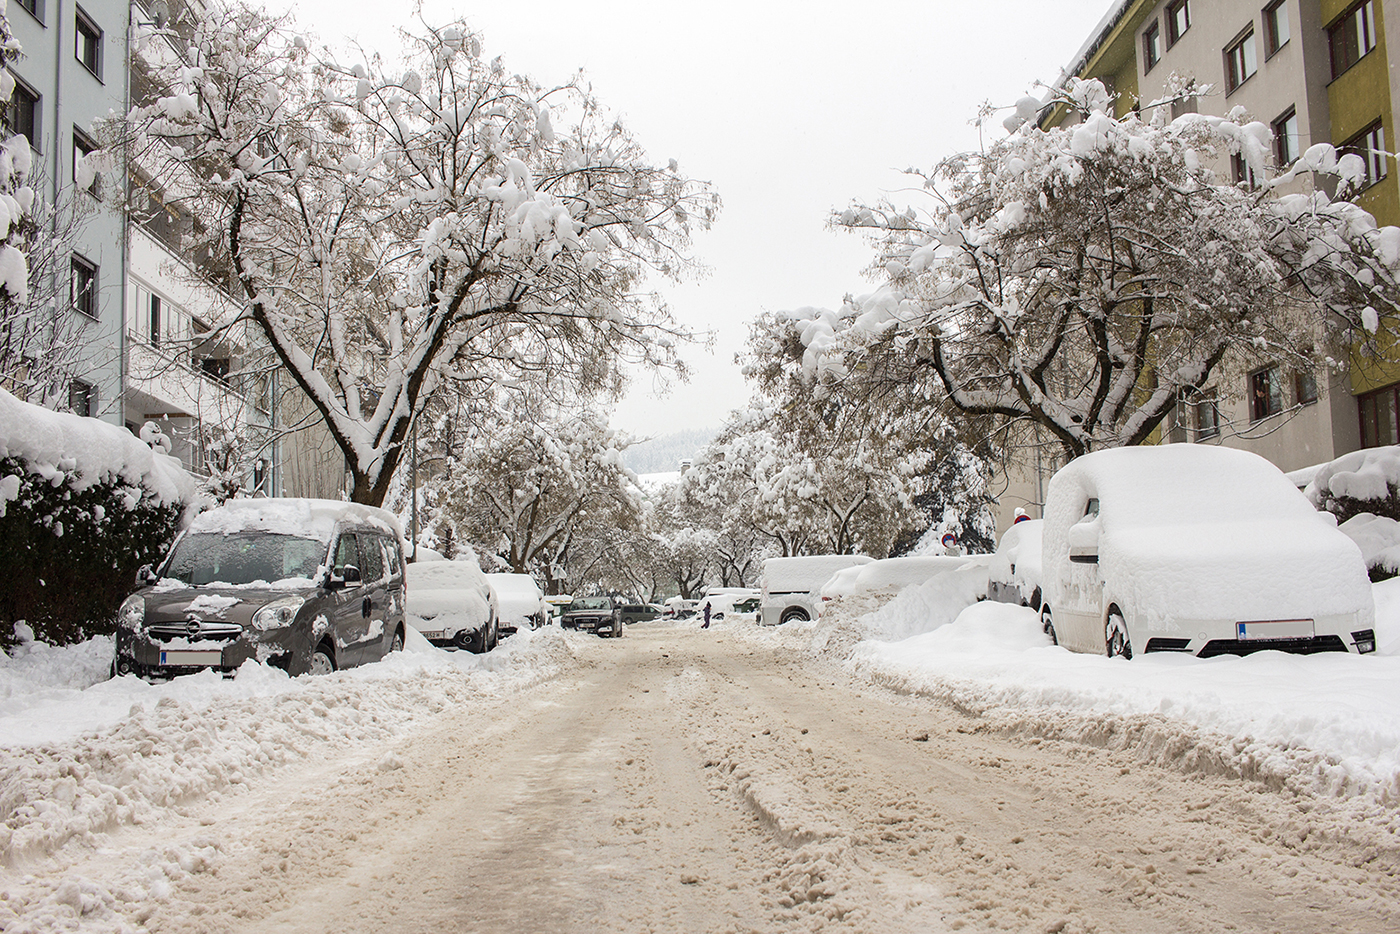 Kostenlose Bild: Auto, Schnee, Straße, Winter, Straße, Reise, Schneesturm,  Reise, Schneeflocke